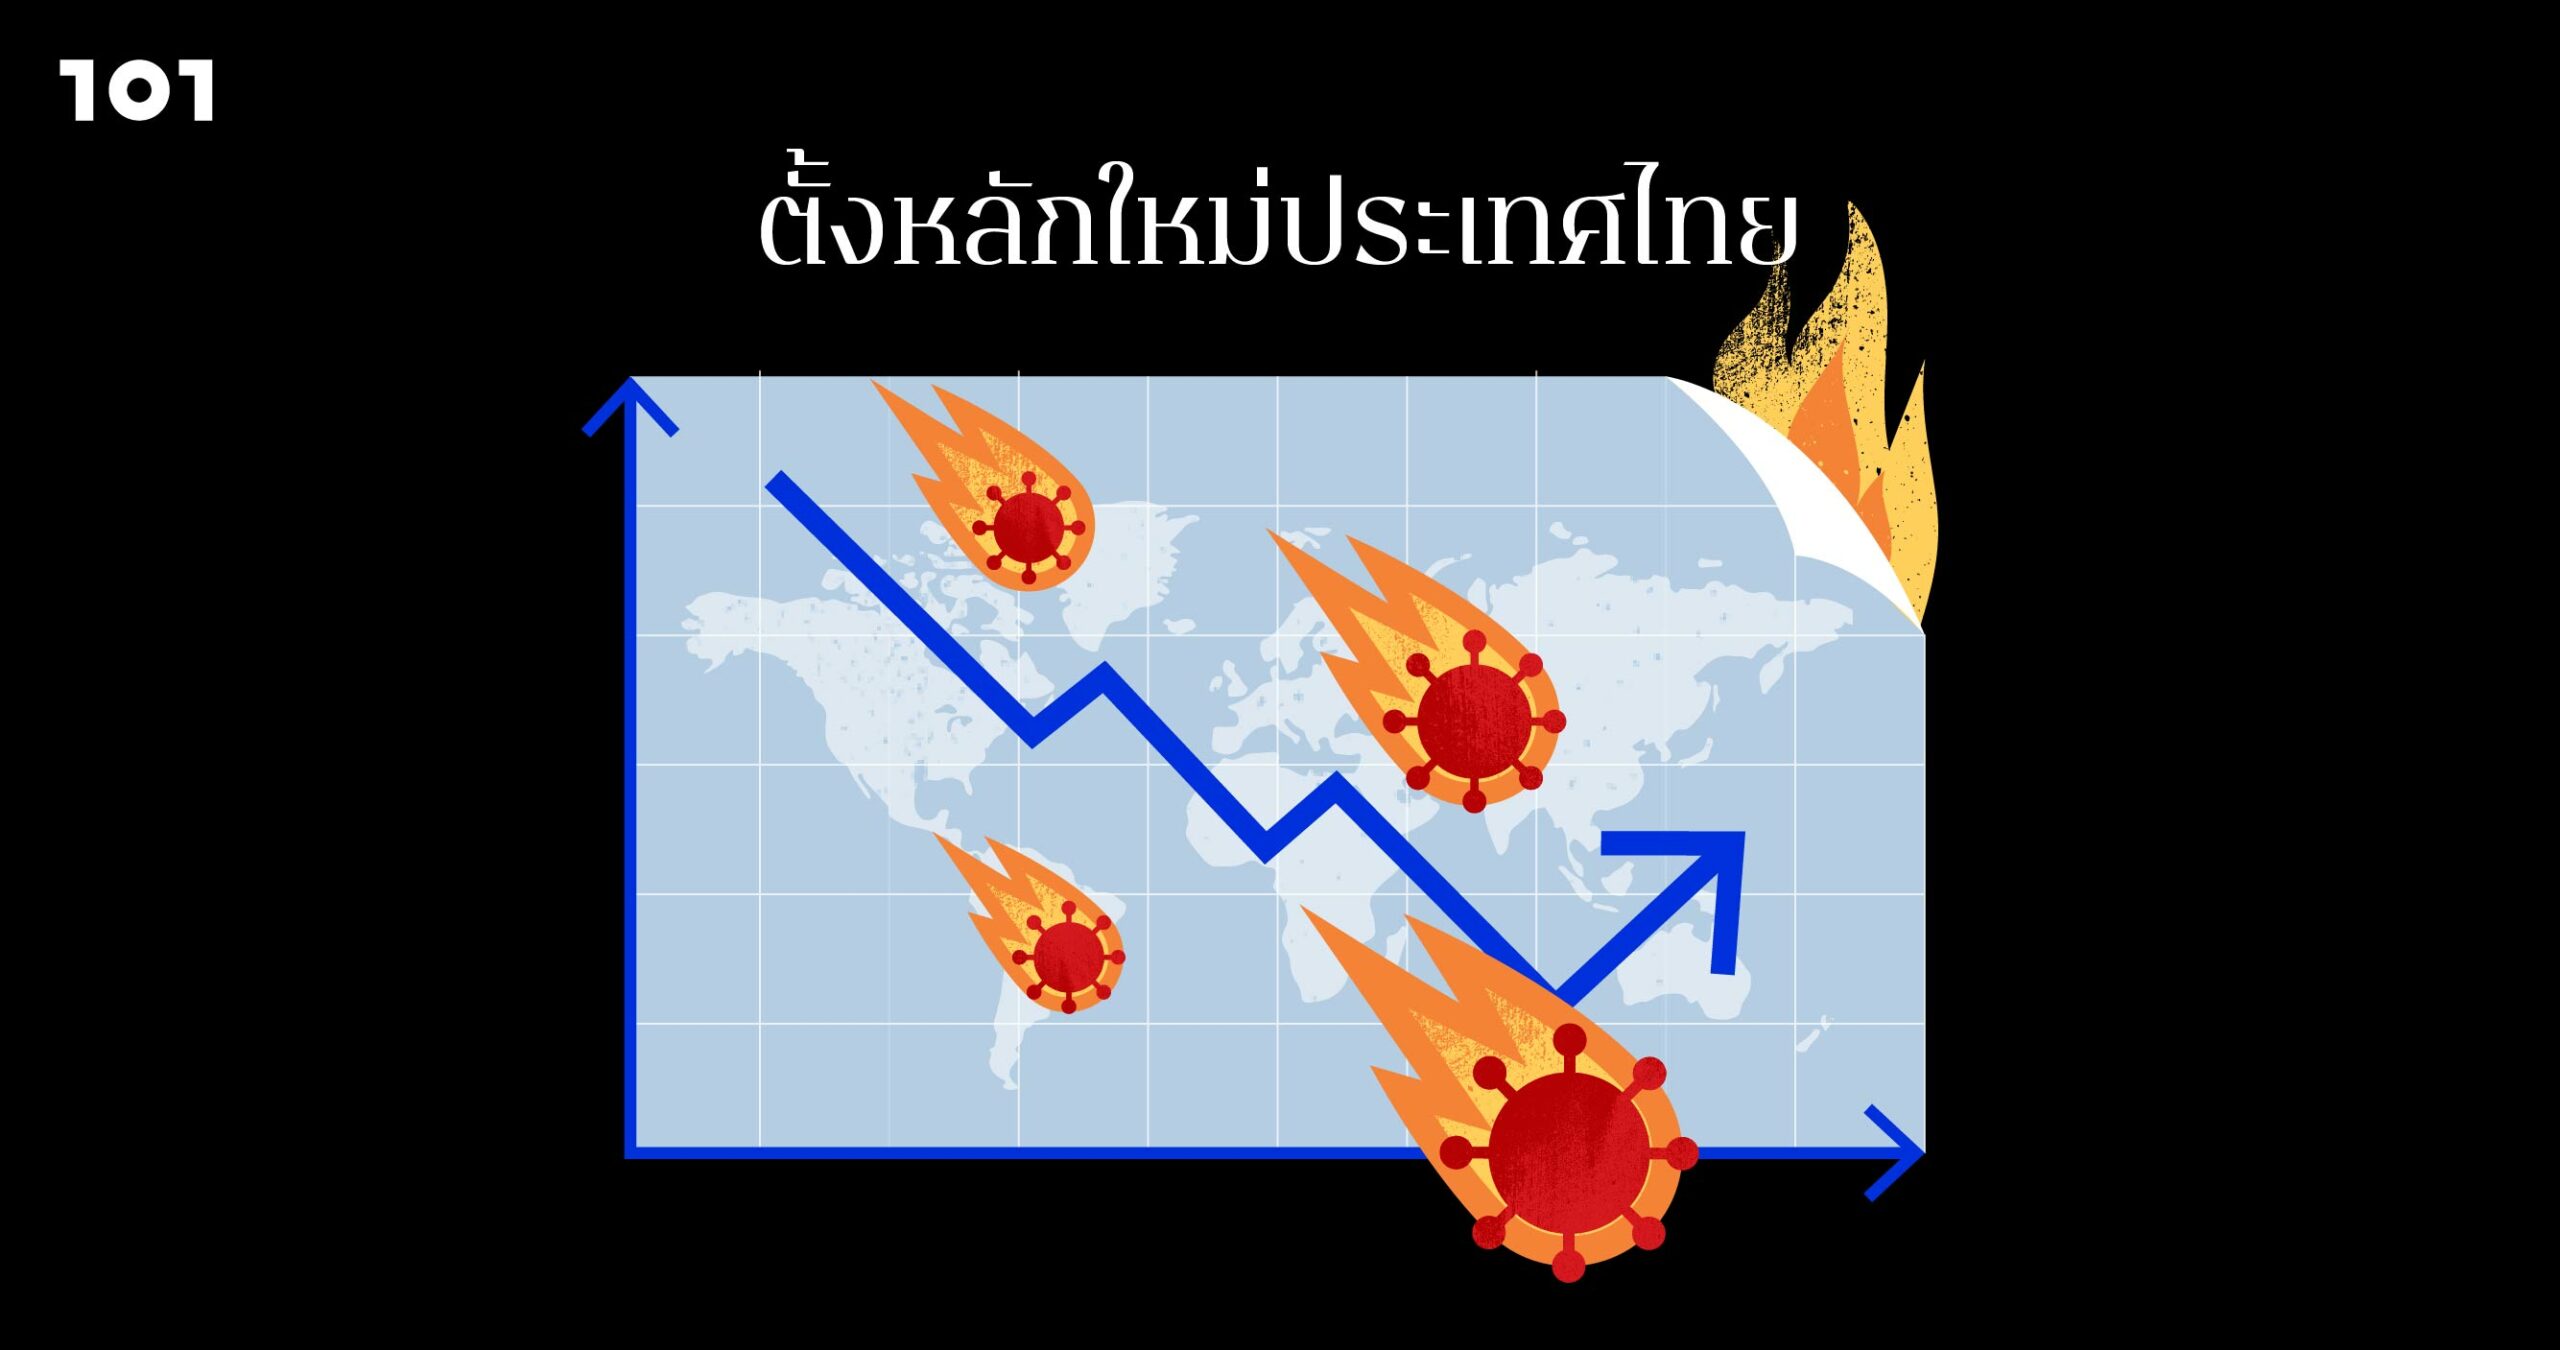 เศรษฐกิจโลก-เศรษฐกิจไทย 2021: หรือเราจะสิ้นหวังแล้ว?